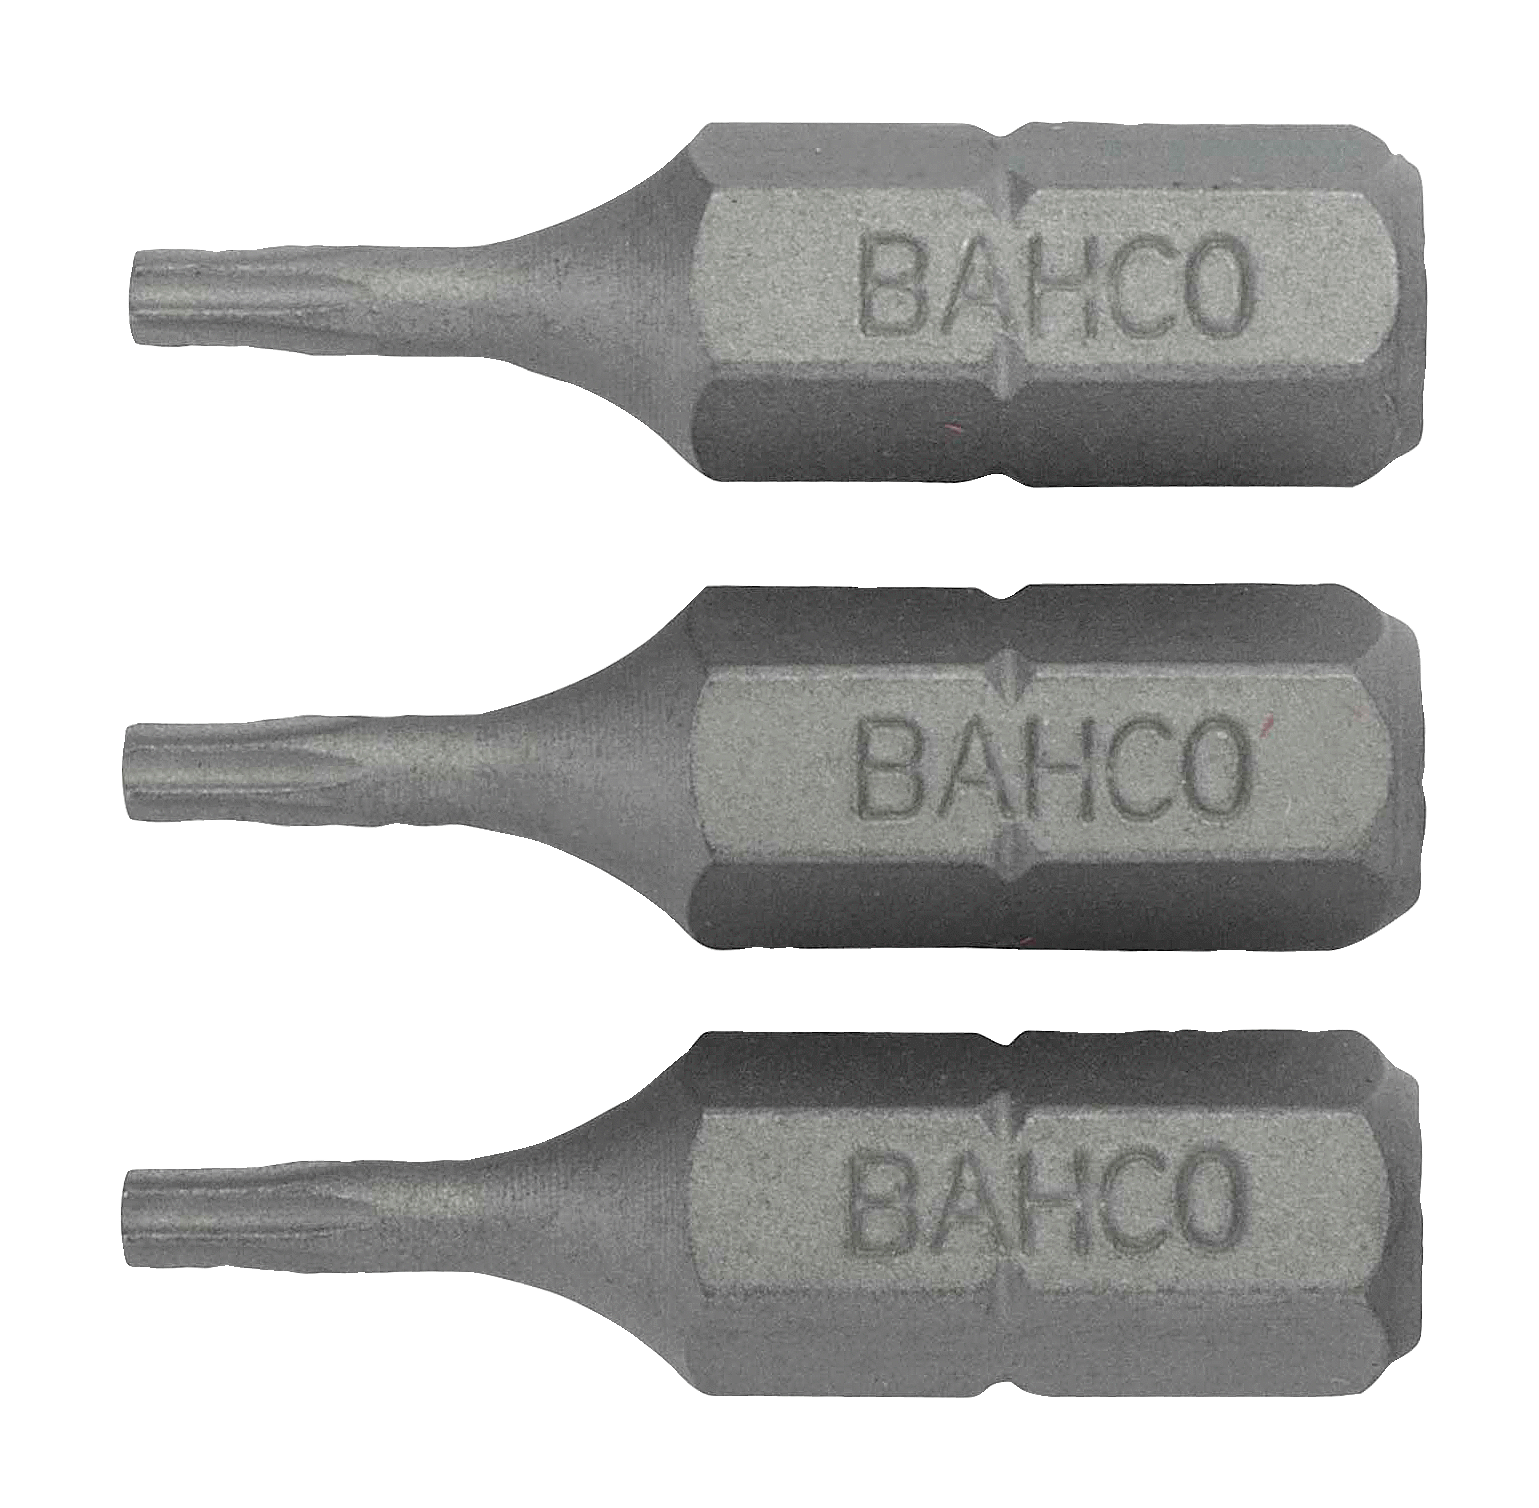 картинка Стандартные биты для отверток Torx® TR, 25 мм BAHCO 59S/TR10 от магазина "Элит-инструмент"